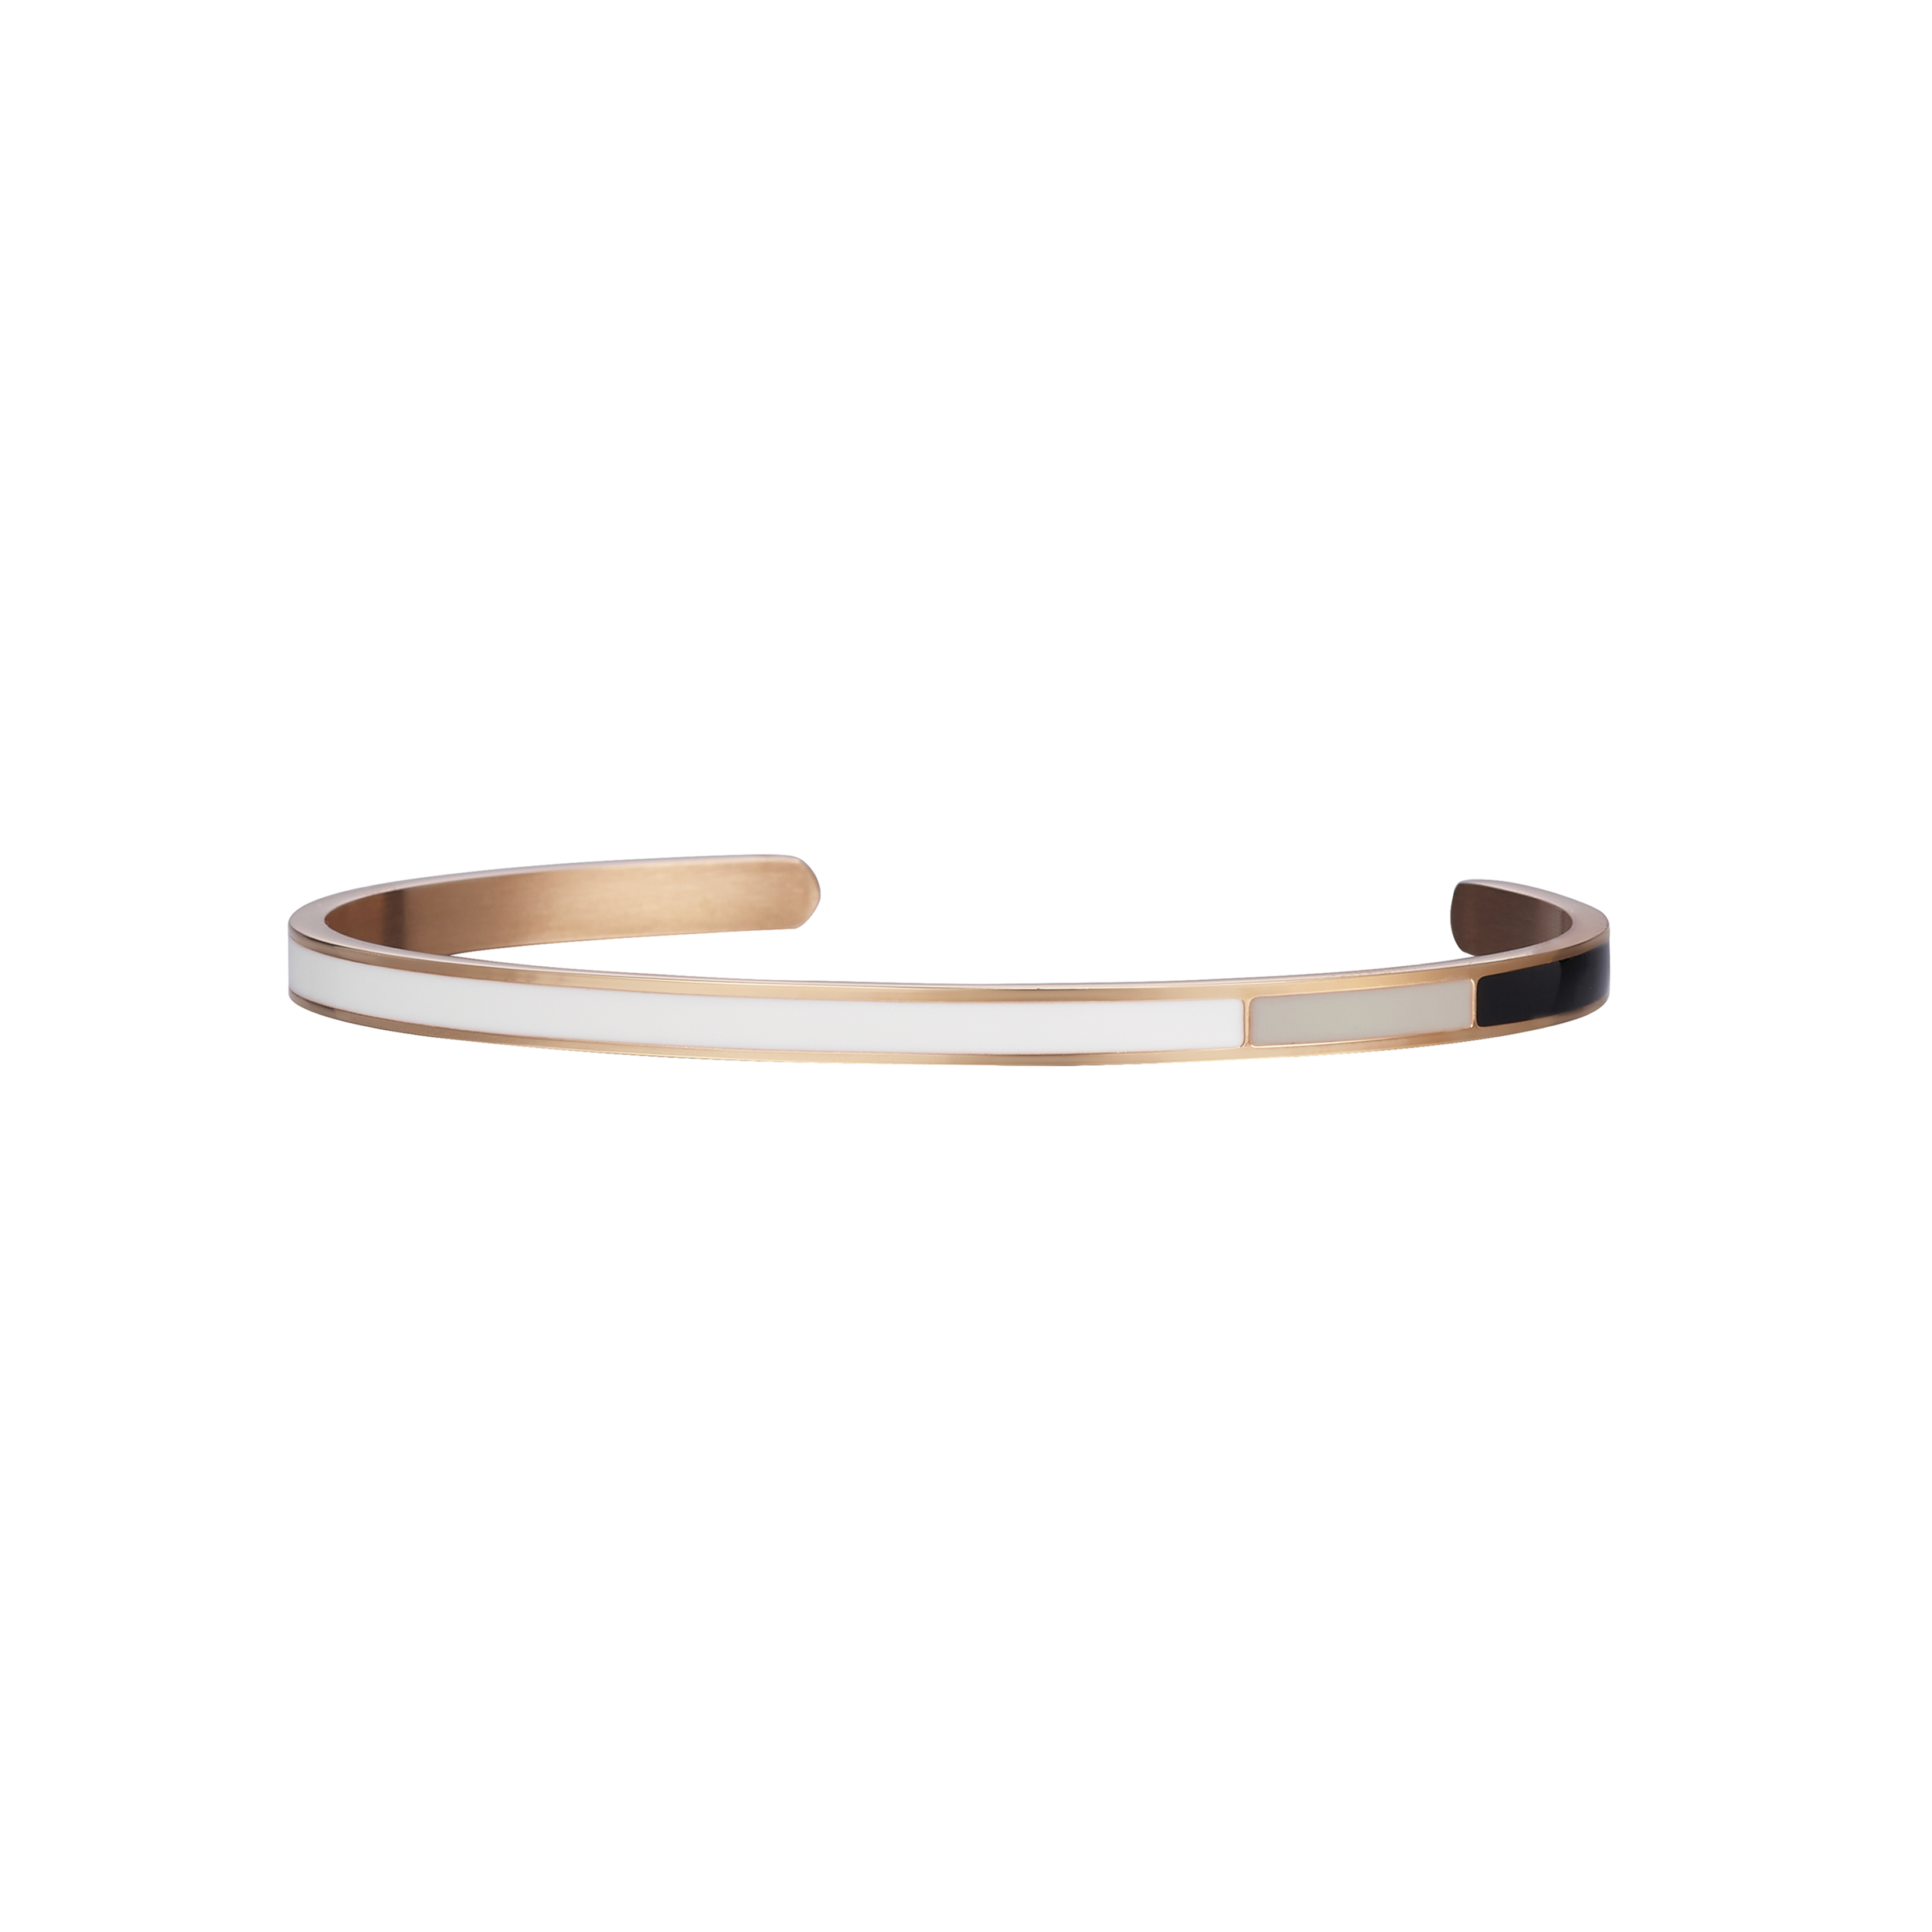 Mondrian Timeless Bracelet - WGB - RG [LB0021WGB-RG]